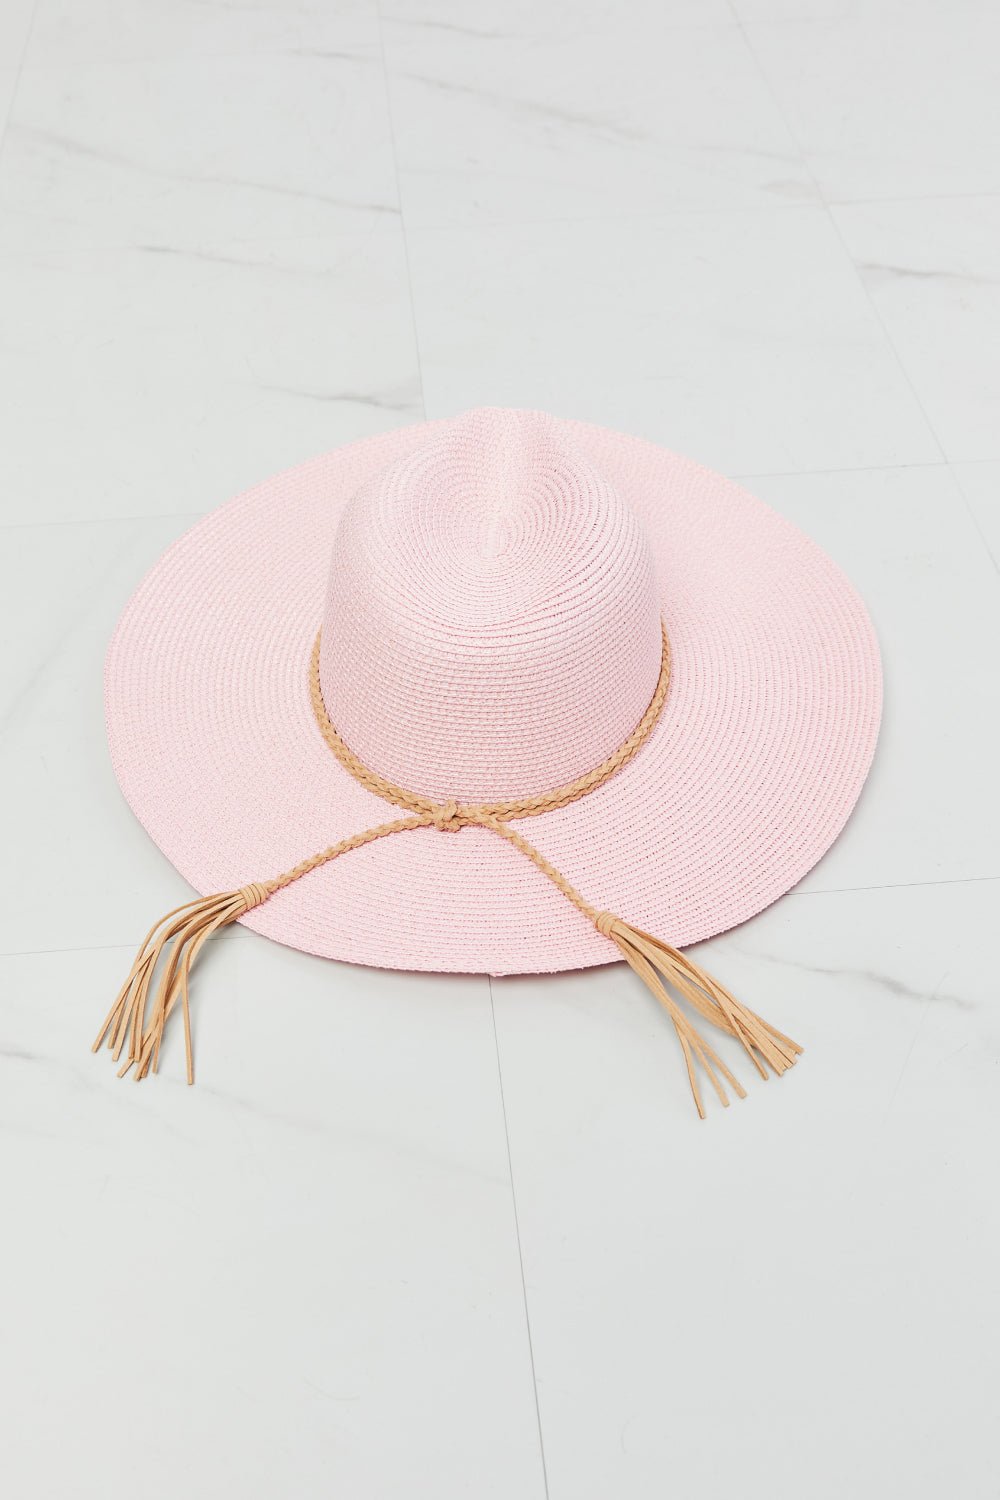 Straw Hat in Carnation PinkHatFame